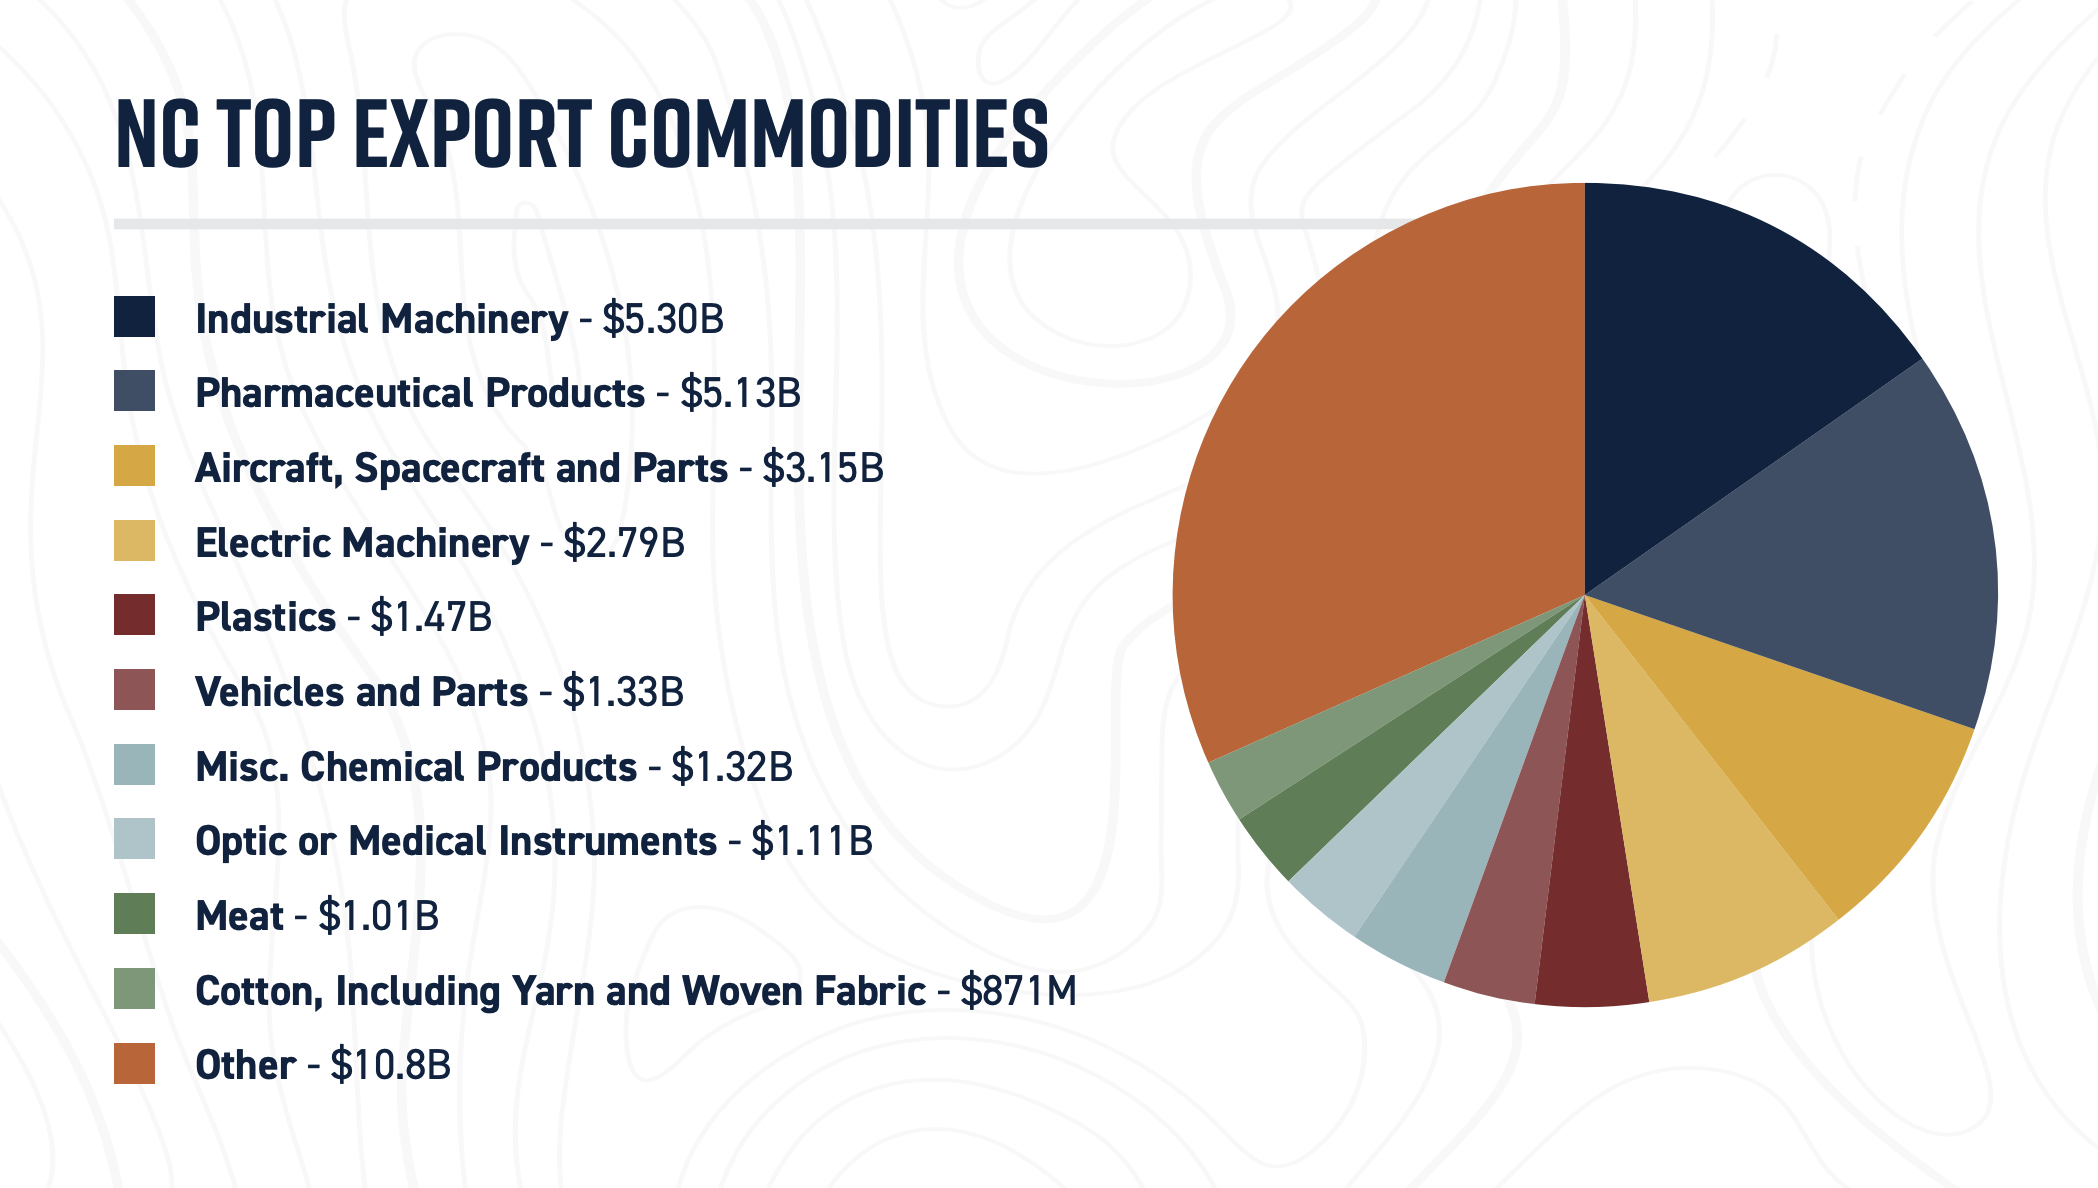 nc top export commodities 2019